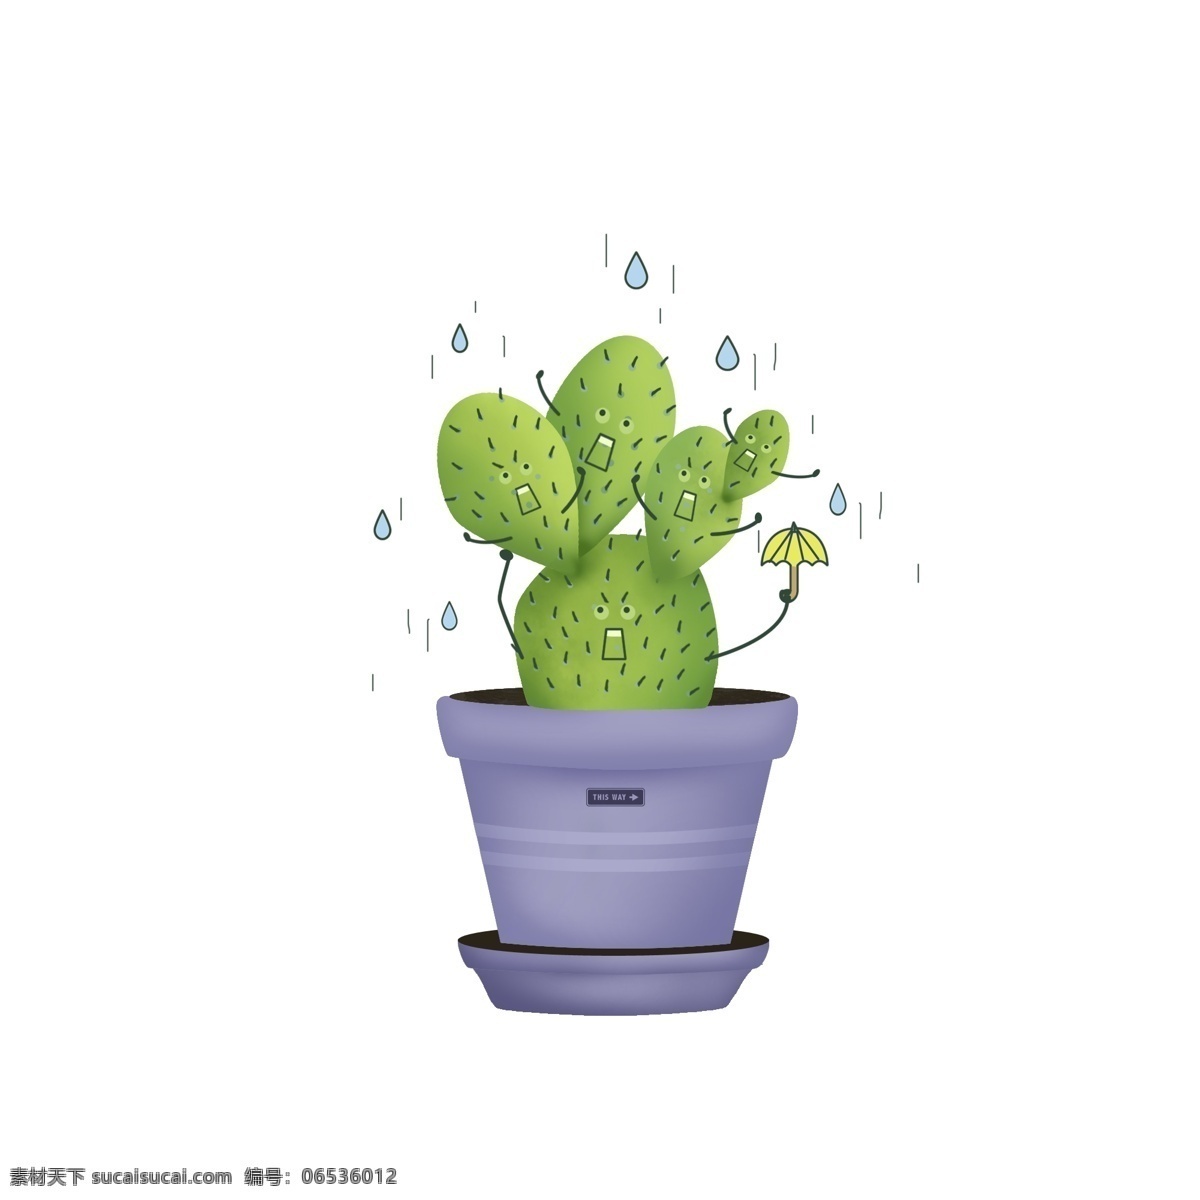 手绘 卡通 可爱 仙人掌 创意 植物 可爱植物 下雨天 害怕的仙人掌